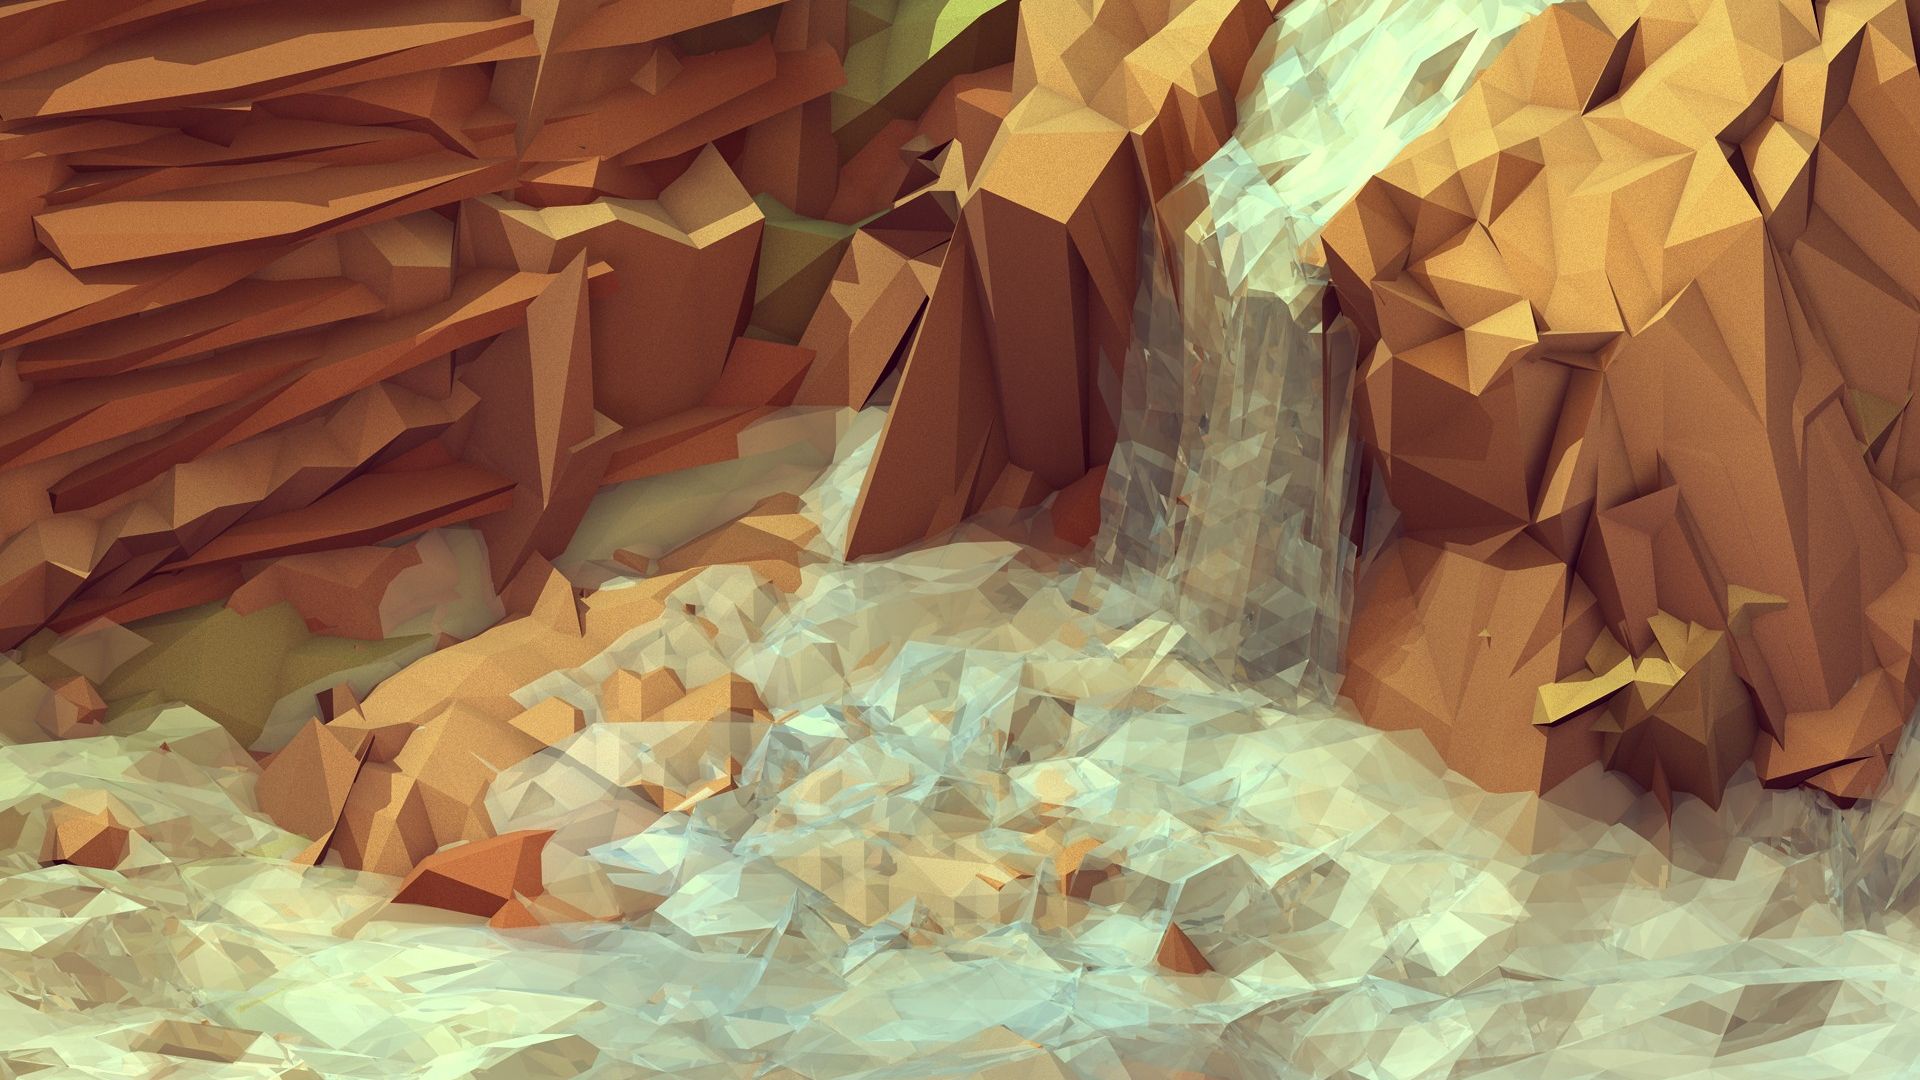 Waterfall On Rocks Hd Wallpaper - Low Poly Iphone 6 - HD Wallpaper 